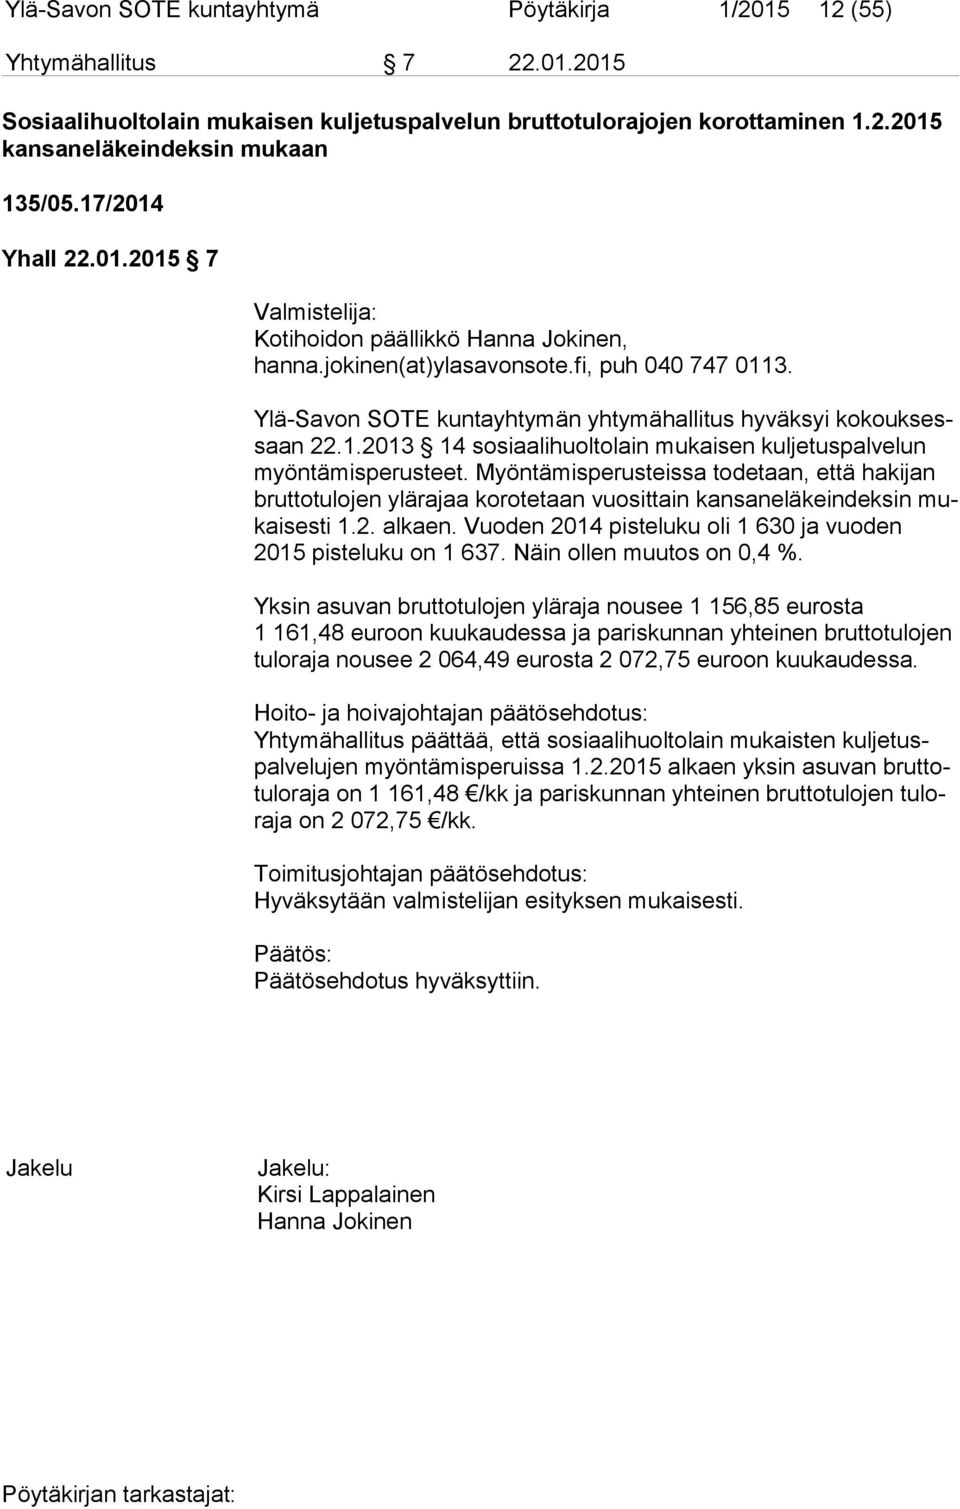 Ylä-Savon SOTE kuntayhtymän yhtymähallitus hyväksyi ko kouk sessaan 22.1.2013 14 sosiaalihuoltolain mukaisen kuljetuspalvelun myön tä mis pe rus teet.